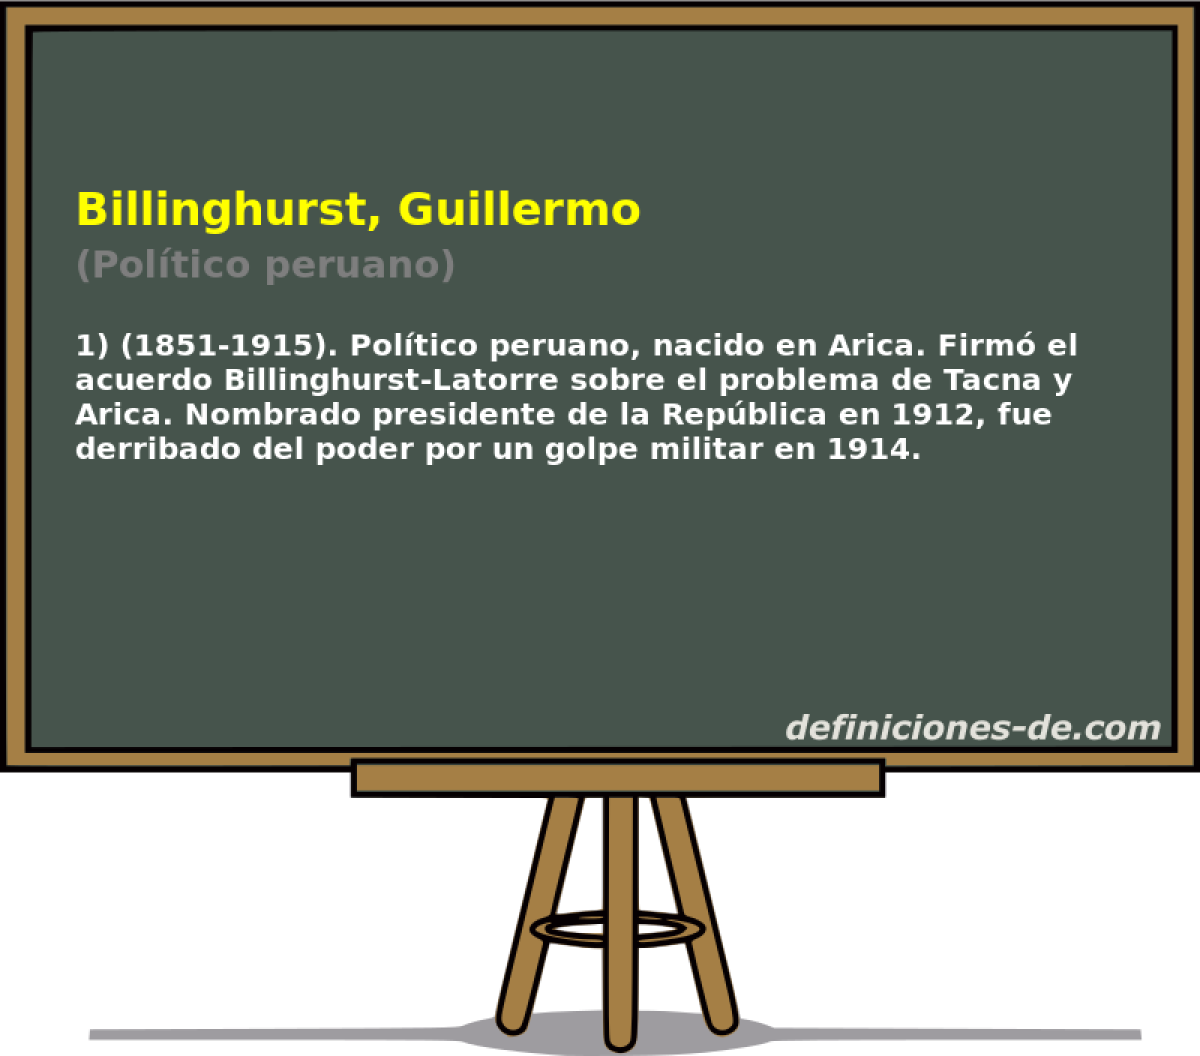 Billinghurst, Guillermo (Poltico peruano)